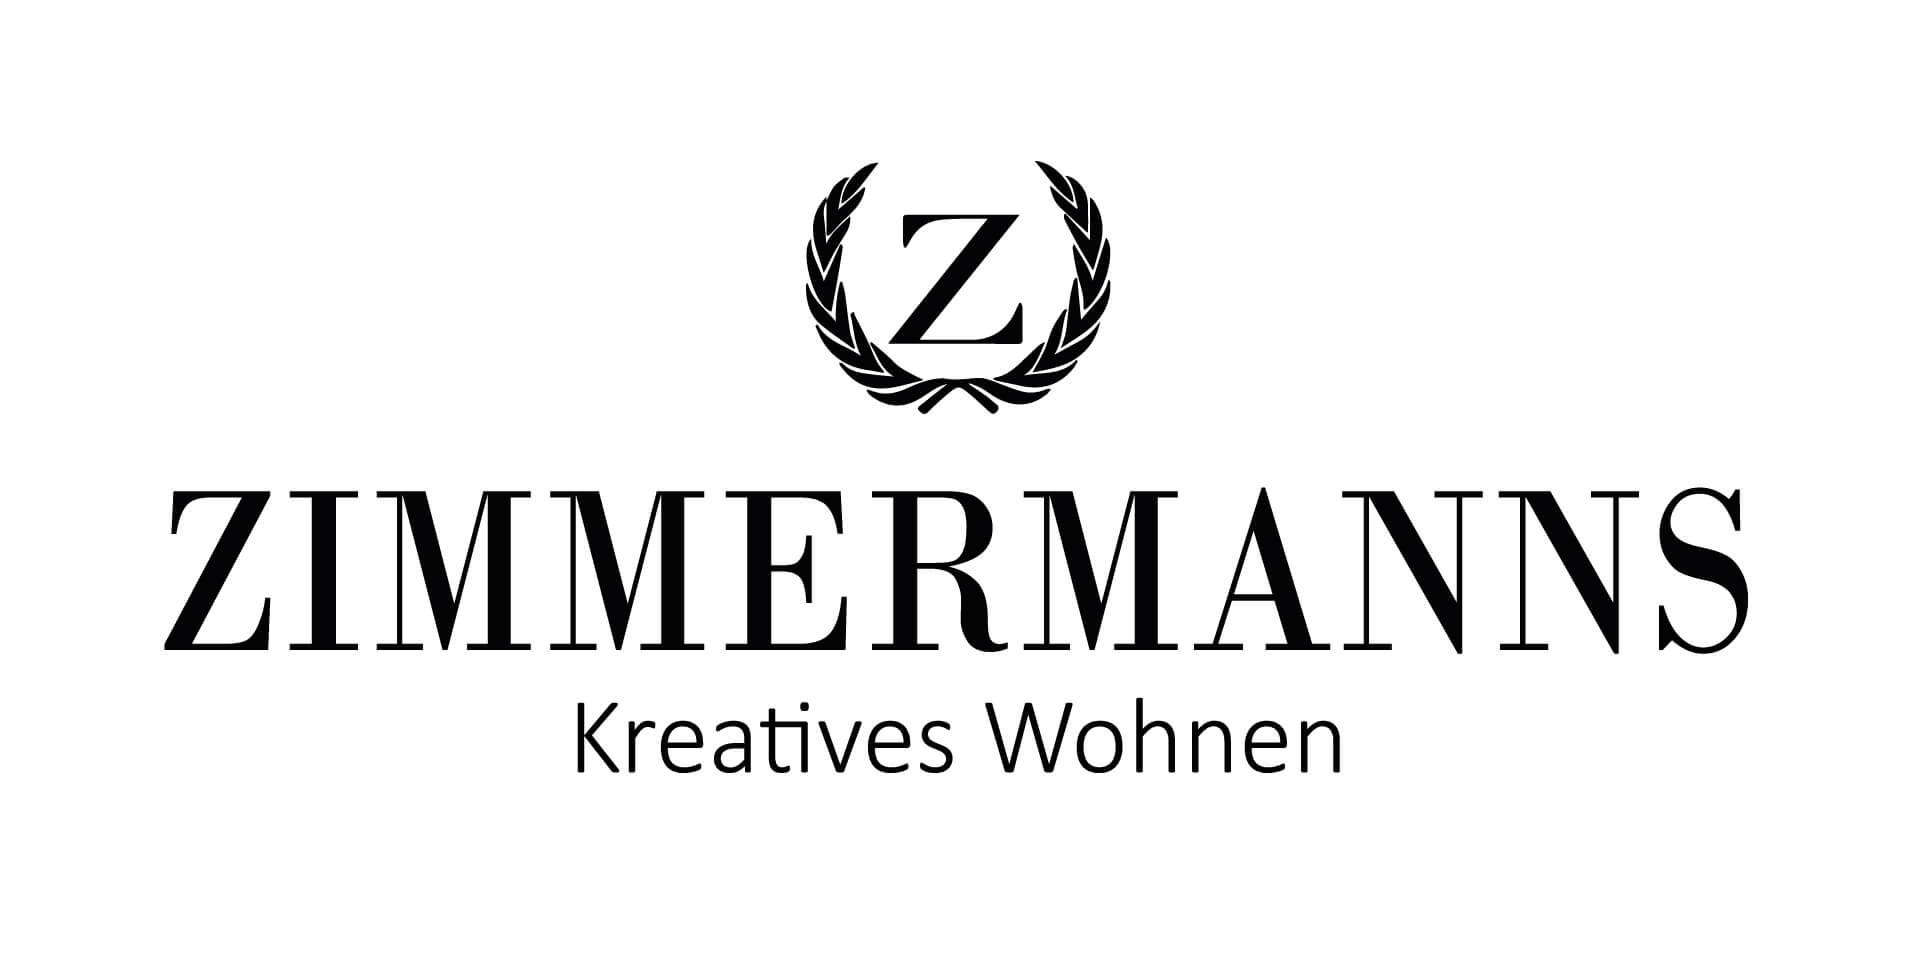 Zimmermanns Kreatives Wohnen